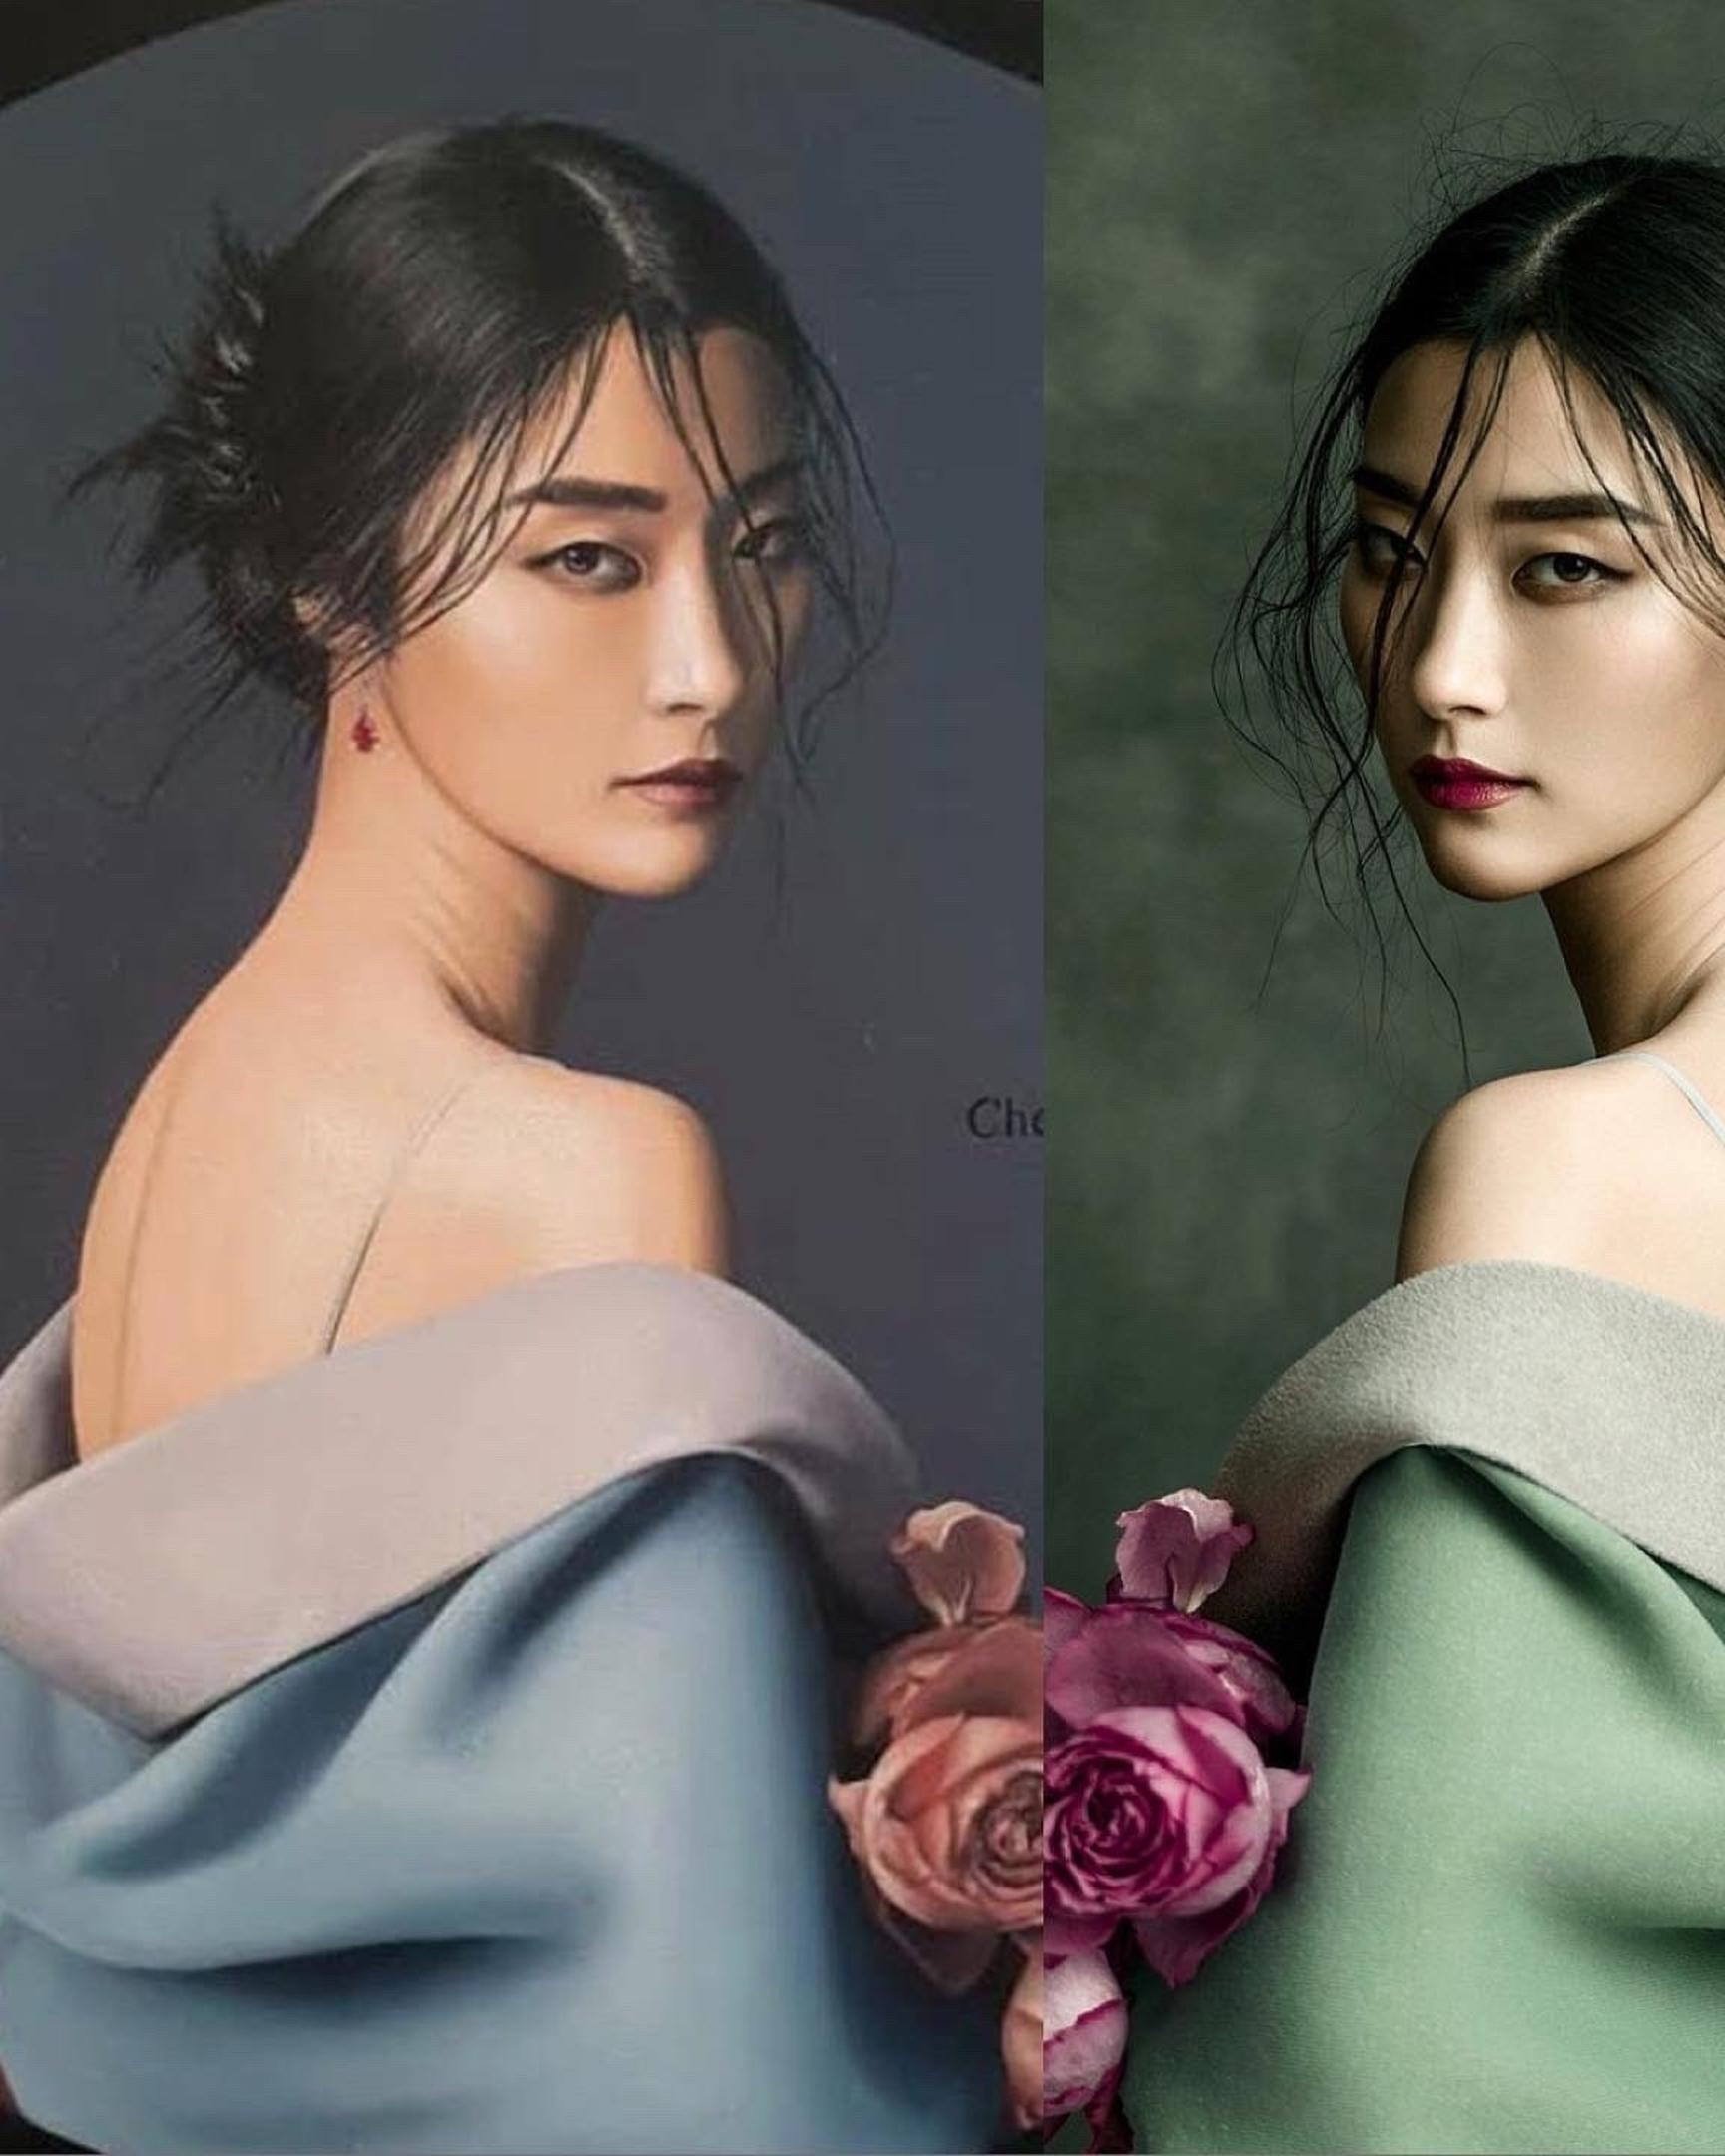 Jingna Zhang veröffentlichte dieses Bild auf Instagram: Links die Arbeit von Jeff Dieschburg, rechts ihr eigenes Werk. 